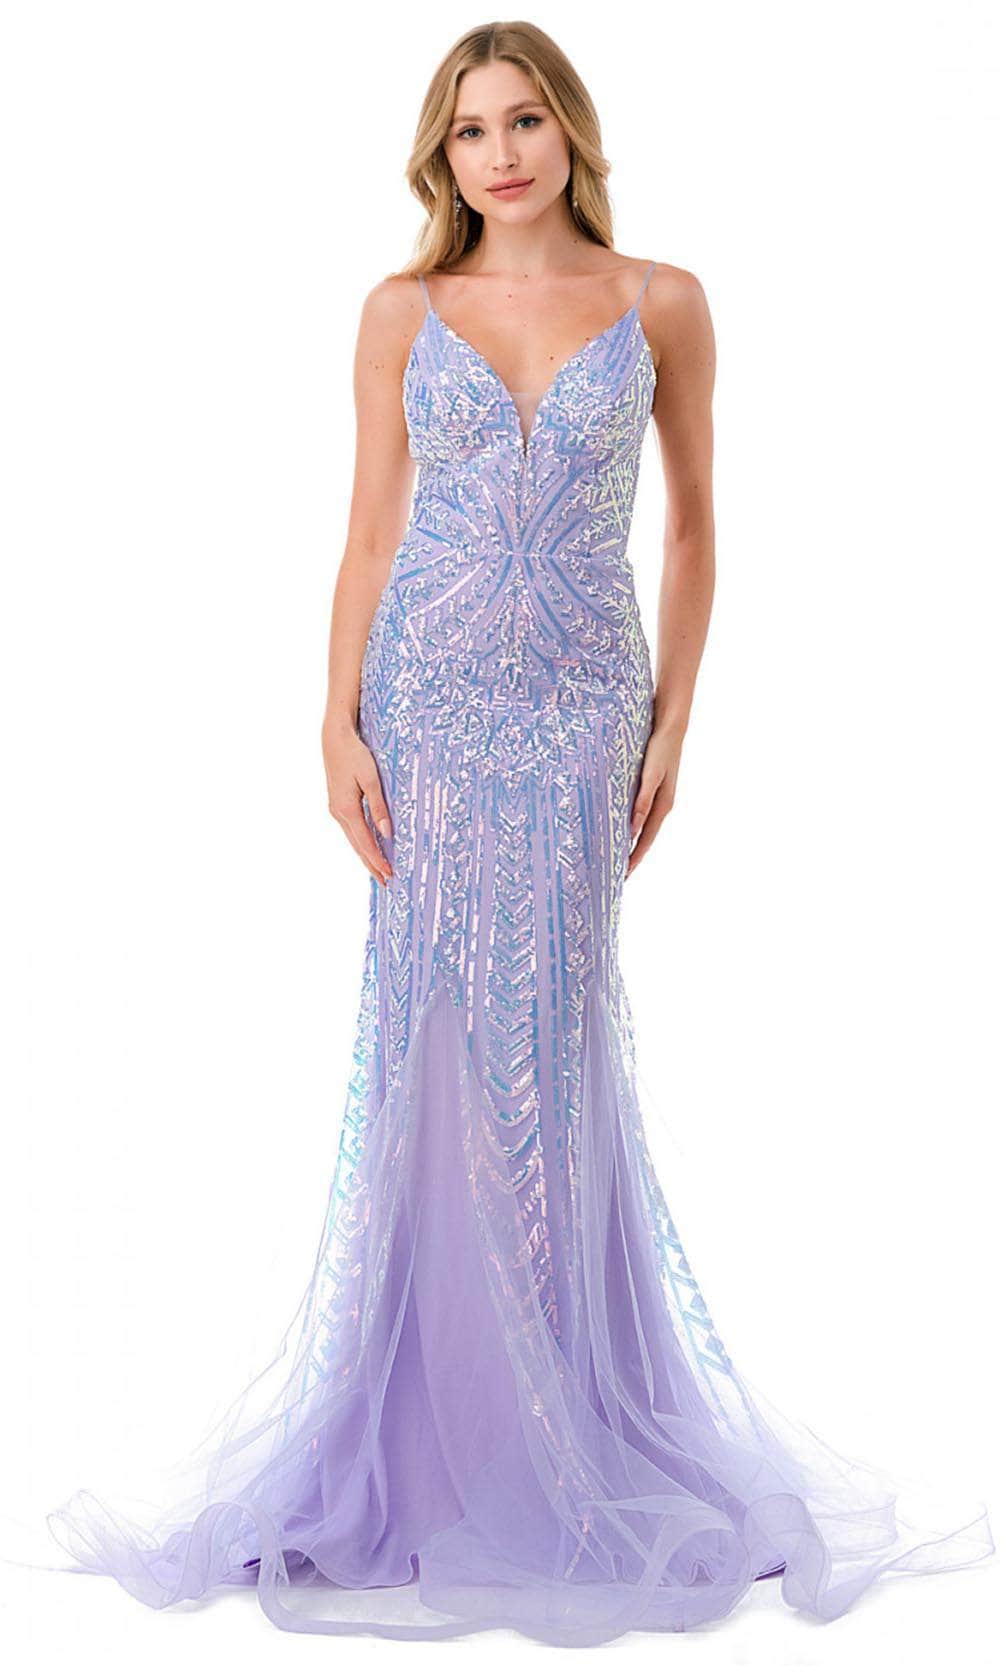 Aspeed Design L2816J - Mermaid Evening Gown